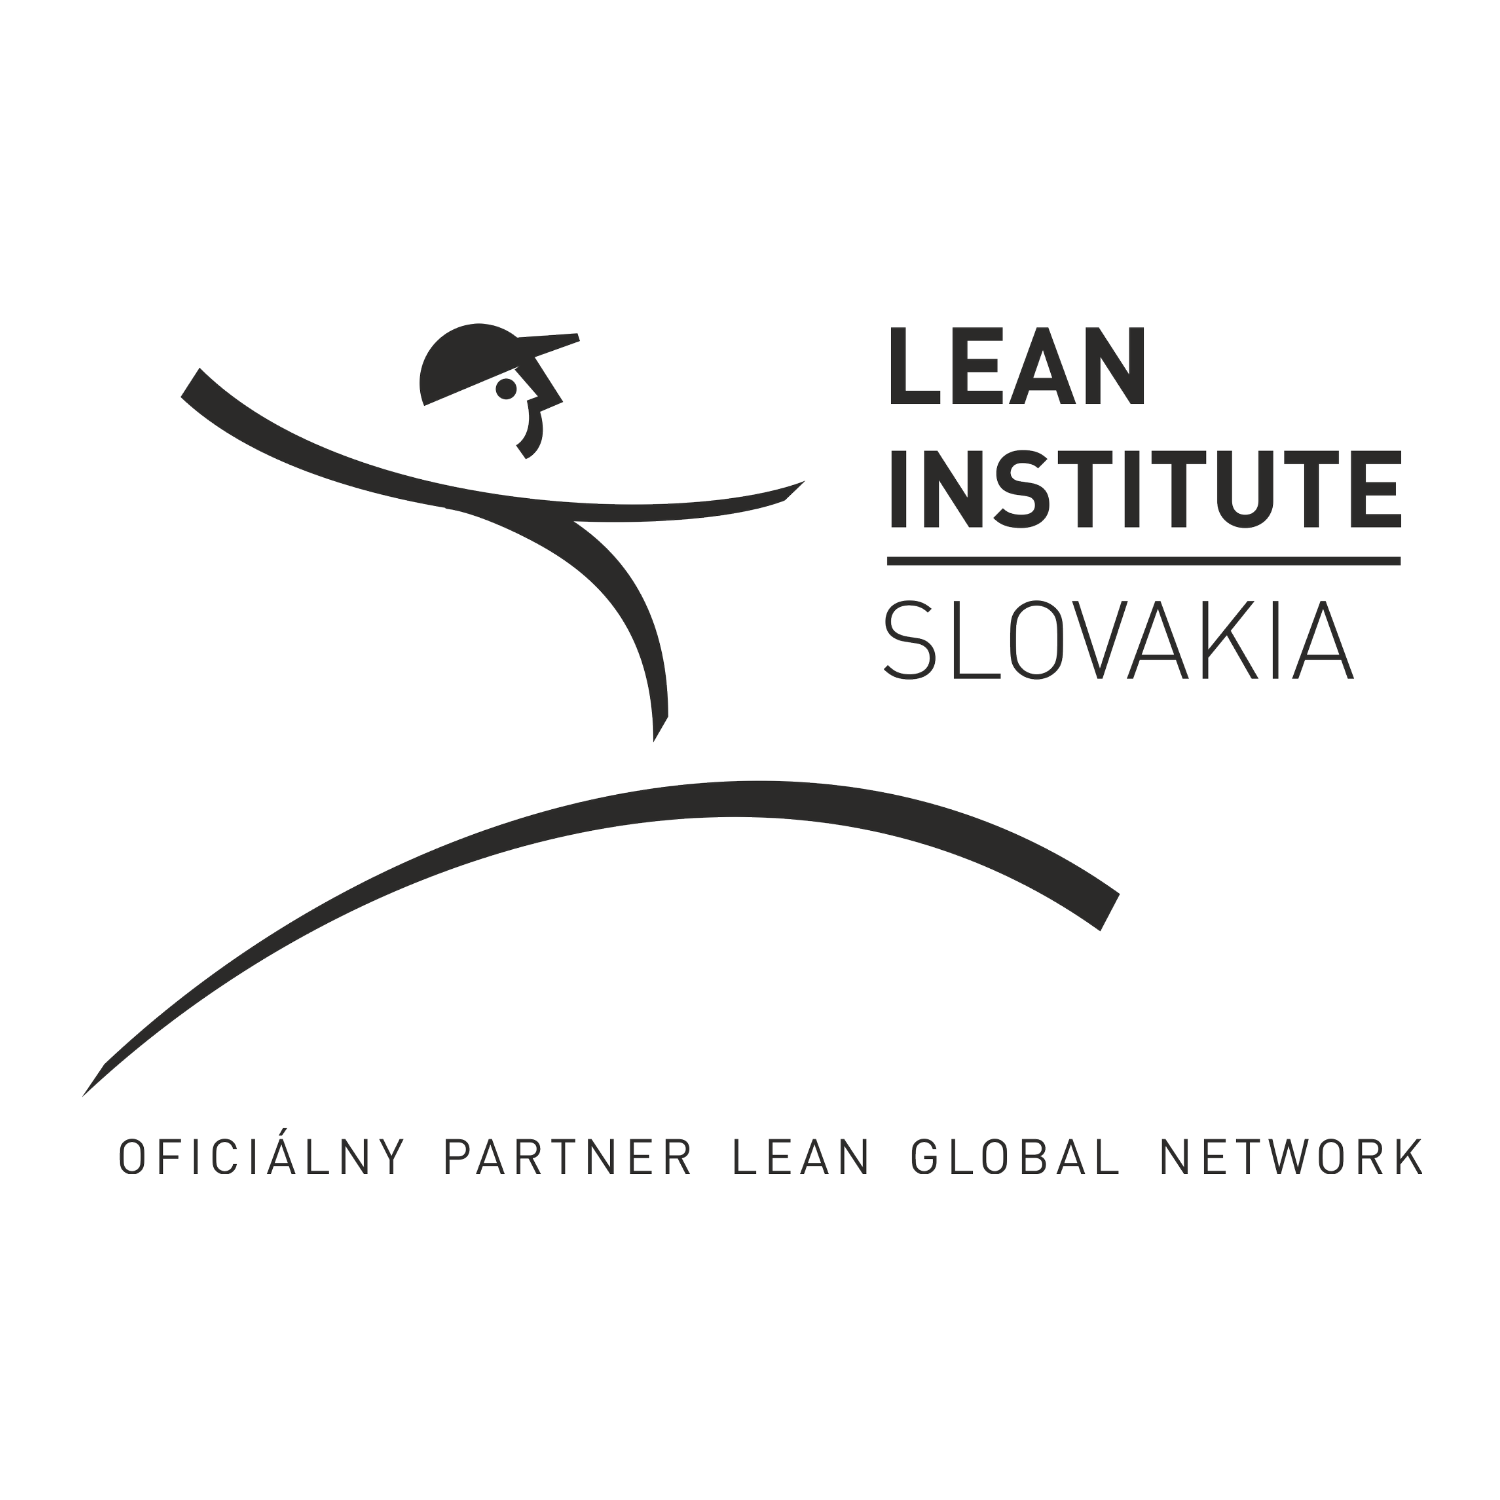 Lean Institute Slovakia